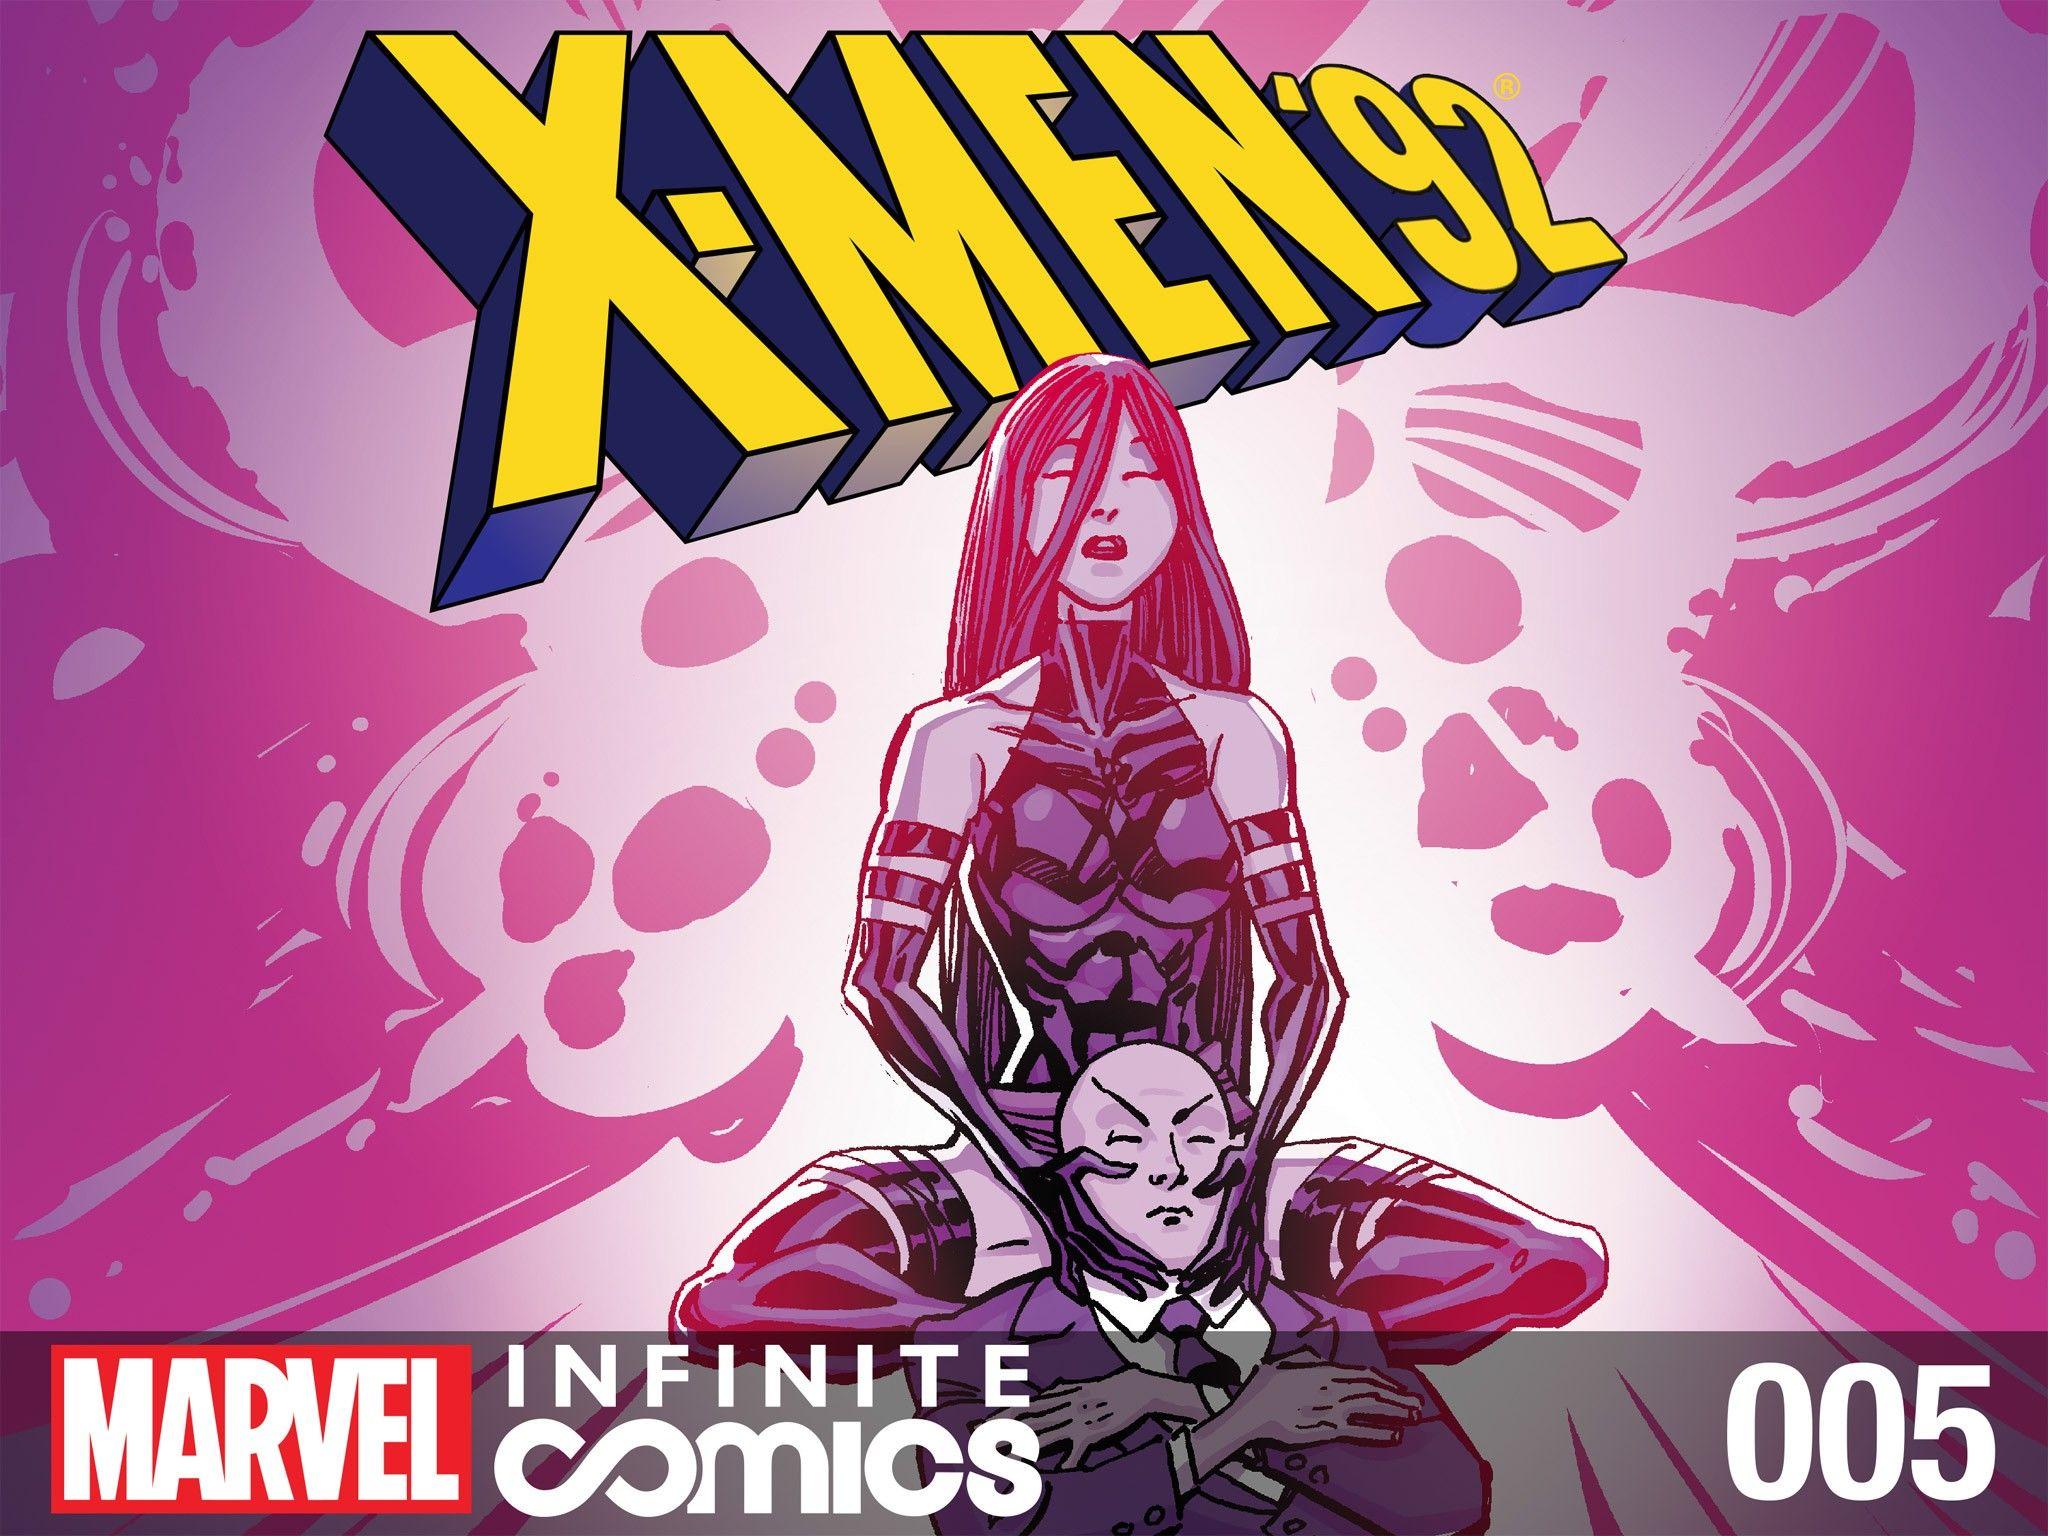 X-Men '92 Infinite Comic Vol. 1 #5